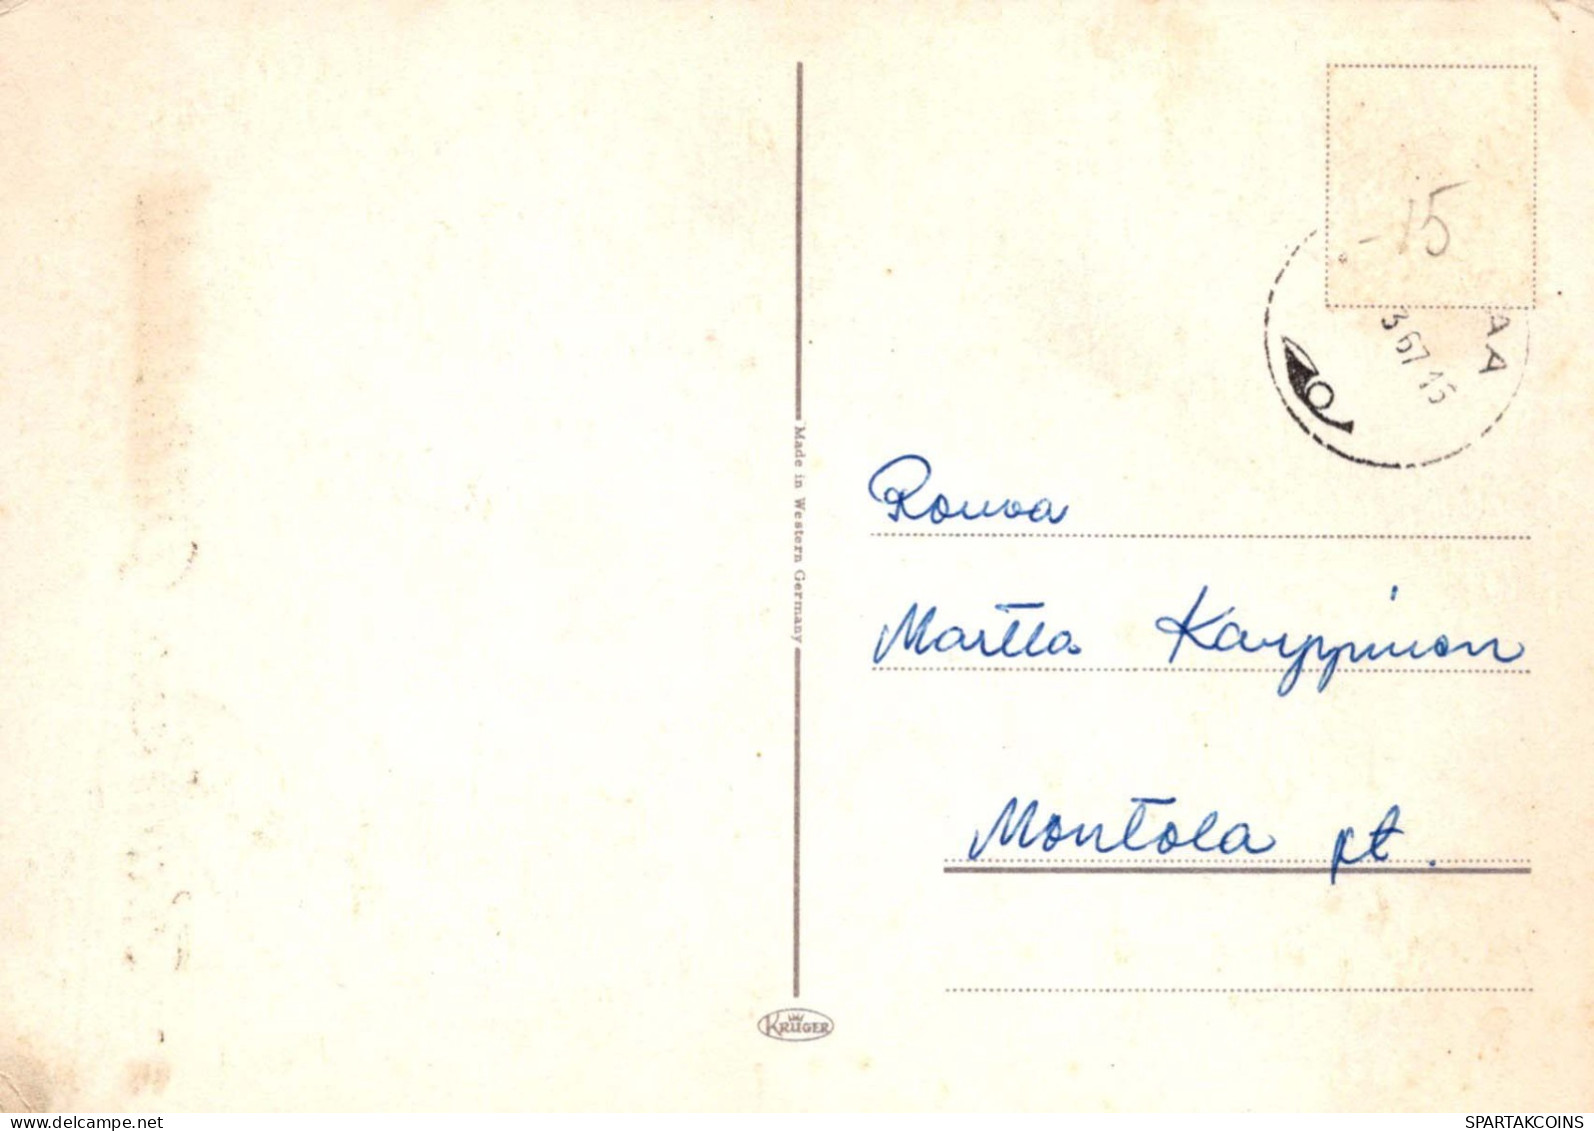 OSTERN HUHN EI Vintage Ansichtskarte Postkarte CPSM #PBP049.DE - Easter